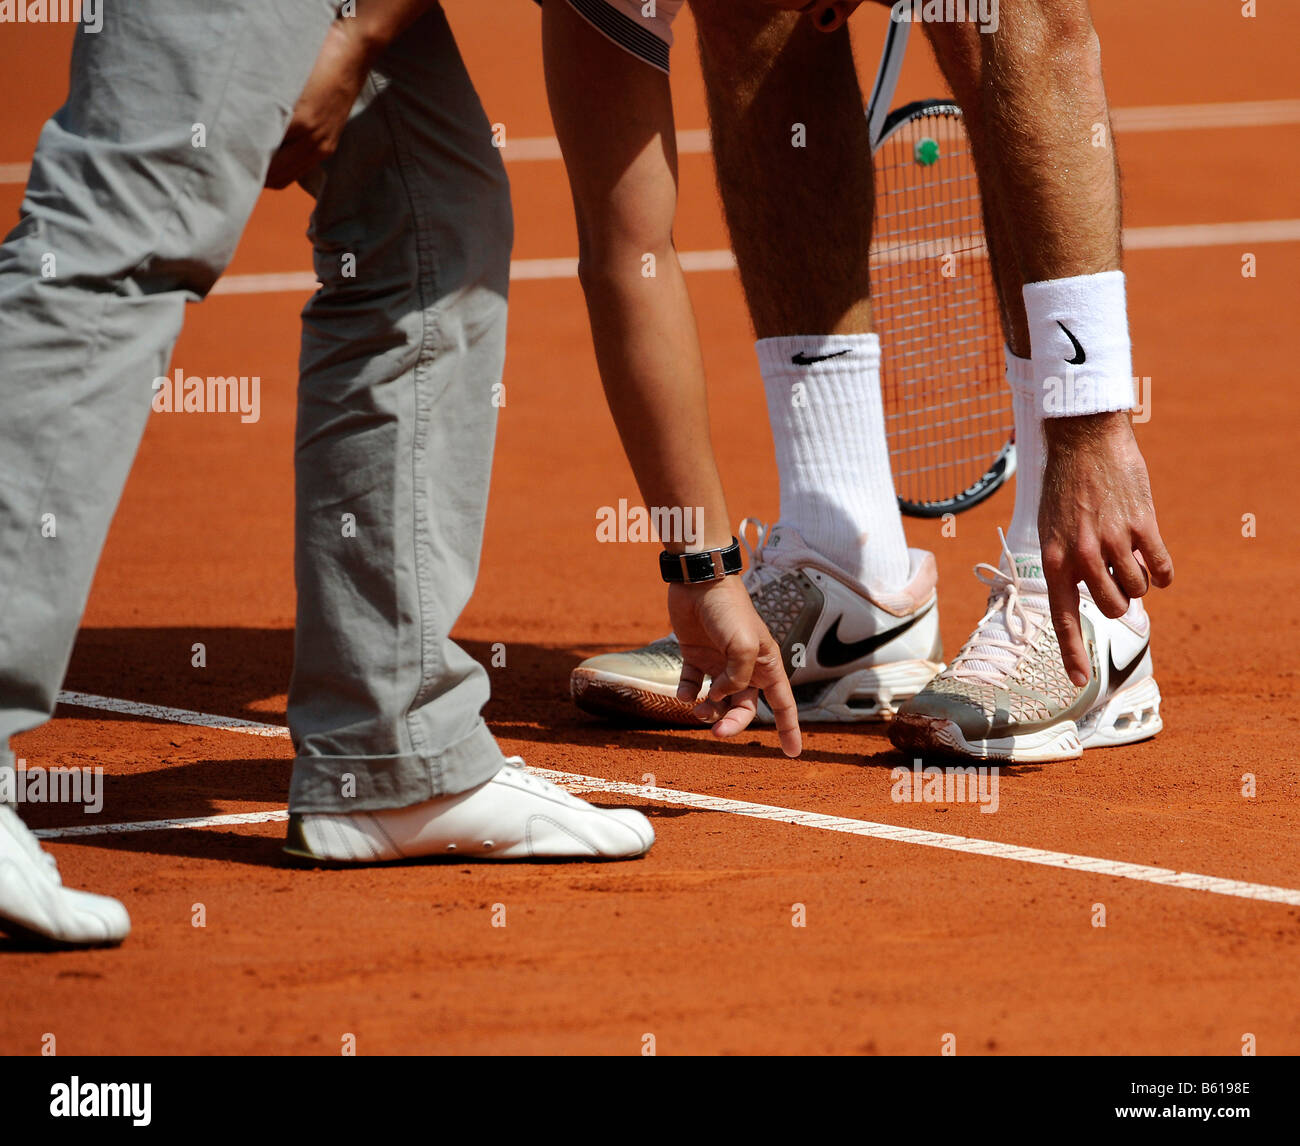 La décision de l'arbitre contesté à un match de tennis, arbitre montrant un joueur de tennis avec l'index gauche de la ligne de la tennis Banque D'Images